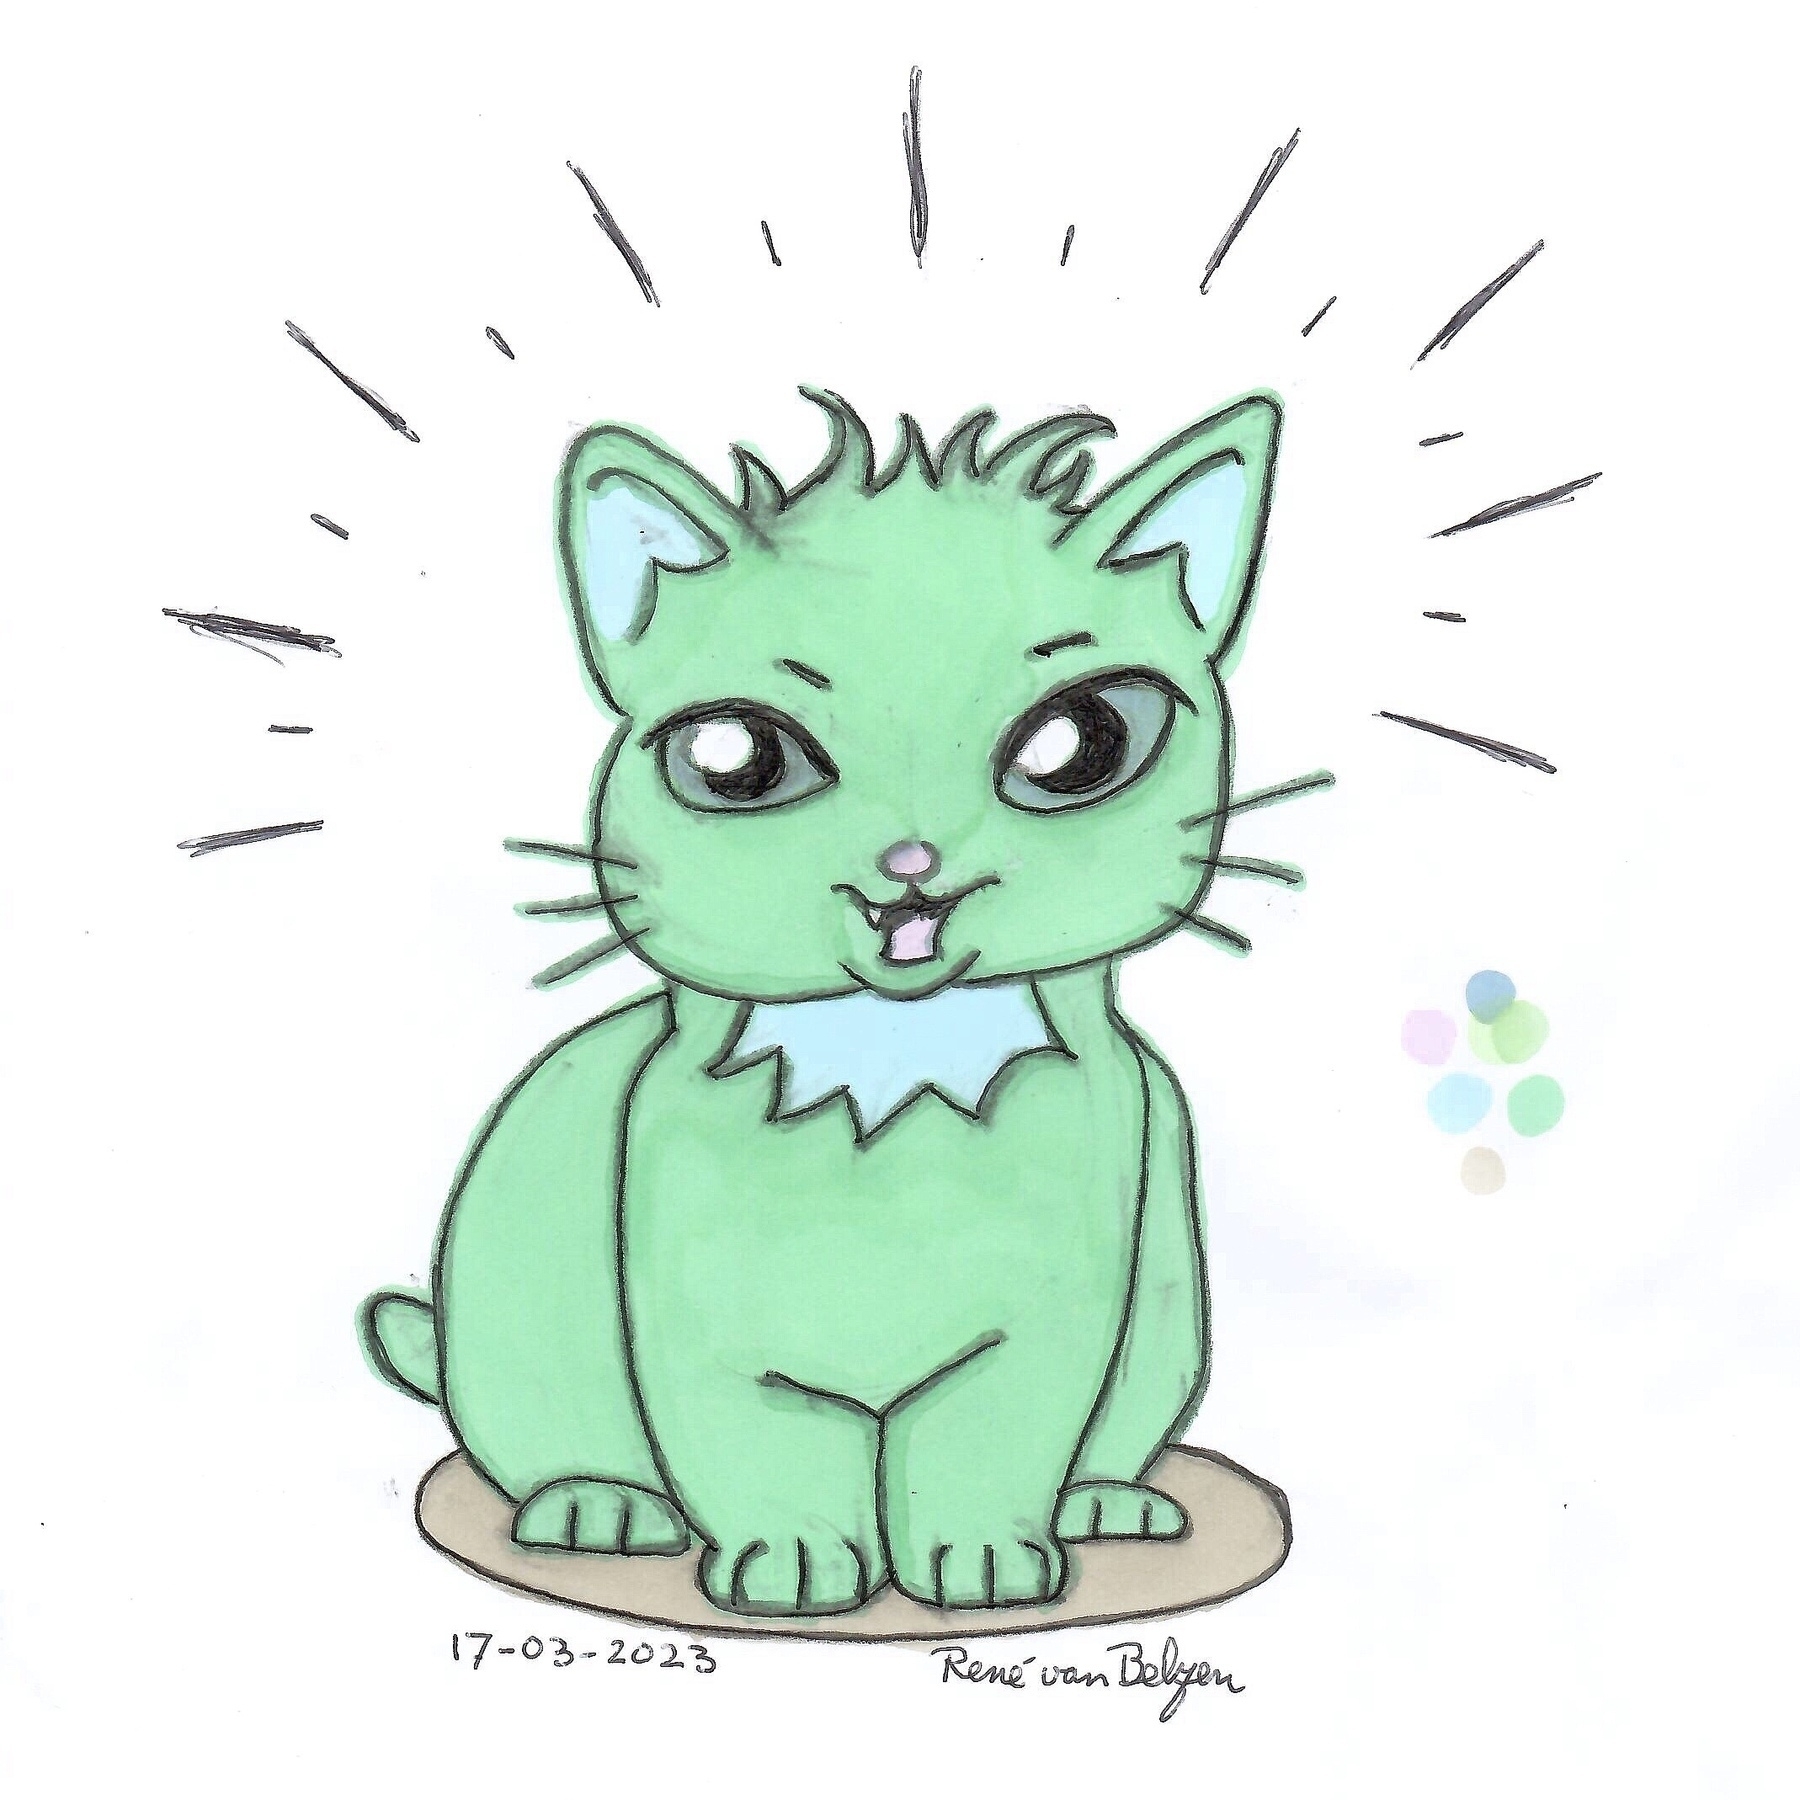 colored ballpoint pen cartoon of a green cat